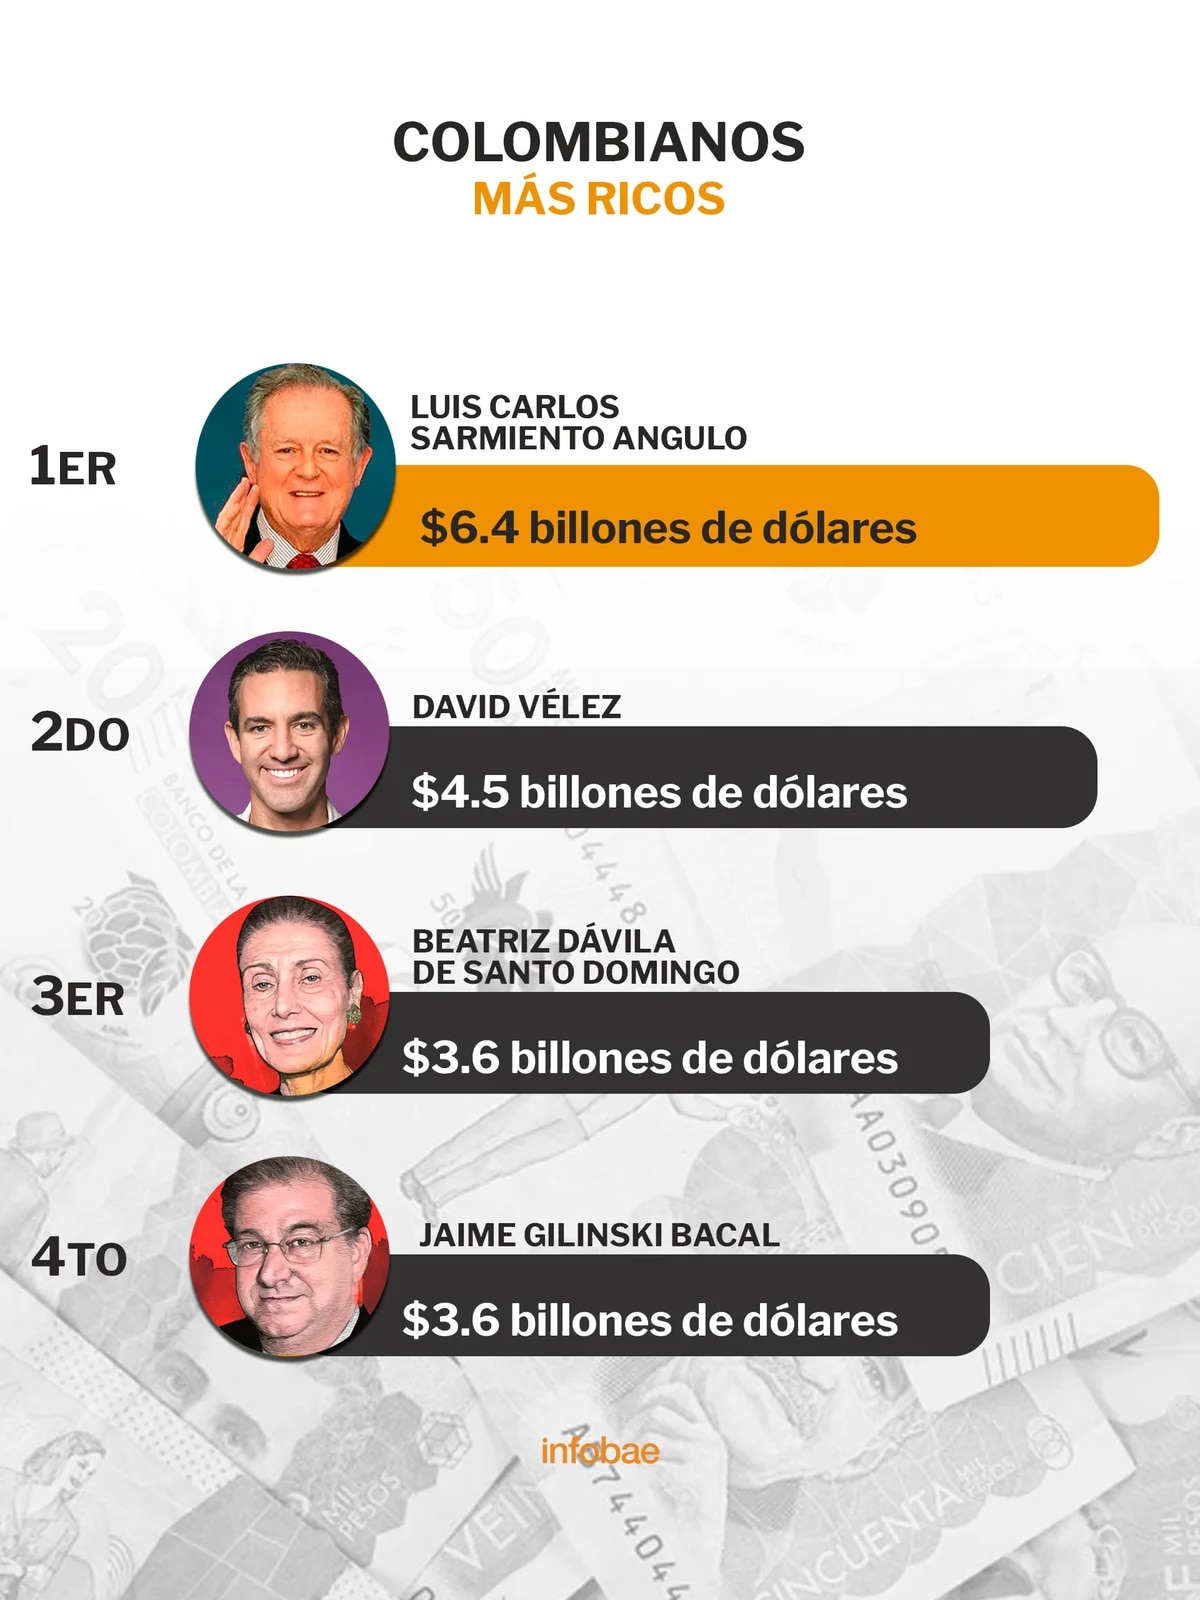 colombianos fortunas billonarias